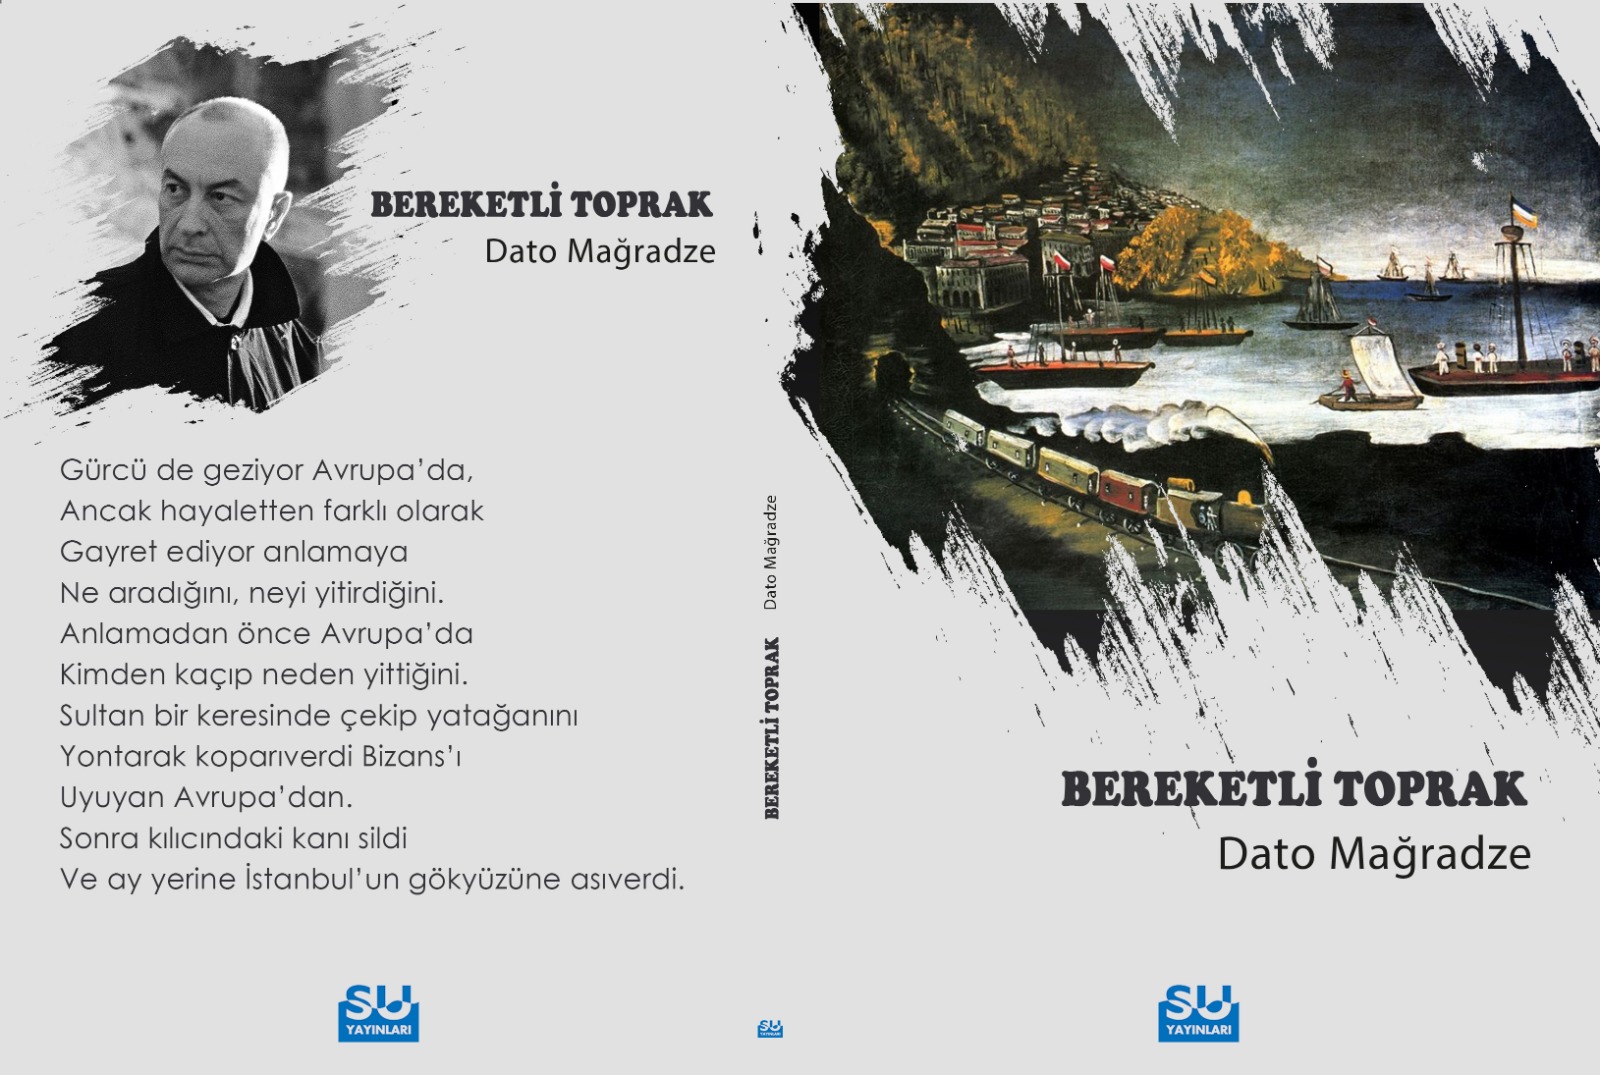 Dato Mağradze'nin son siir kitabı '' BEREKETLİ TOPRAK''çıktı